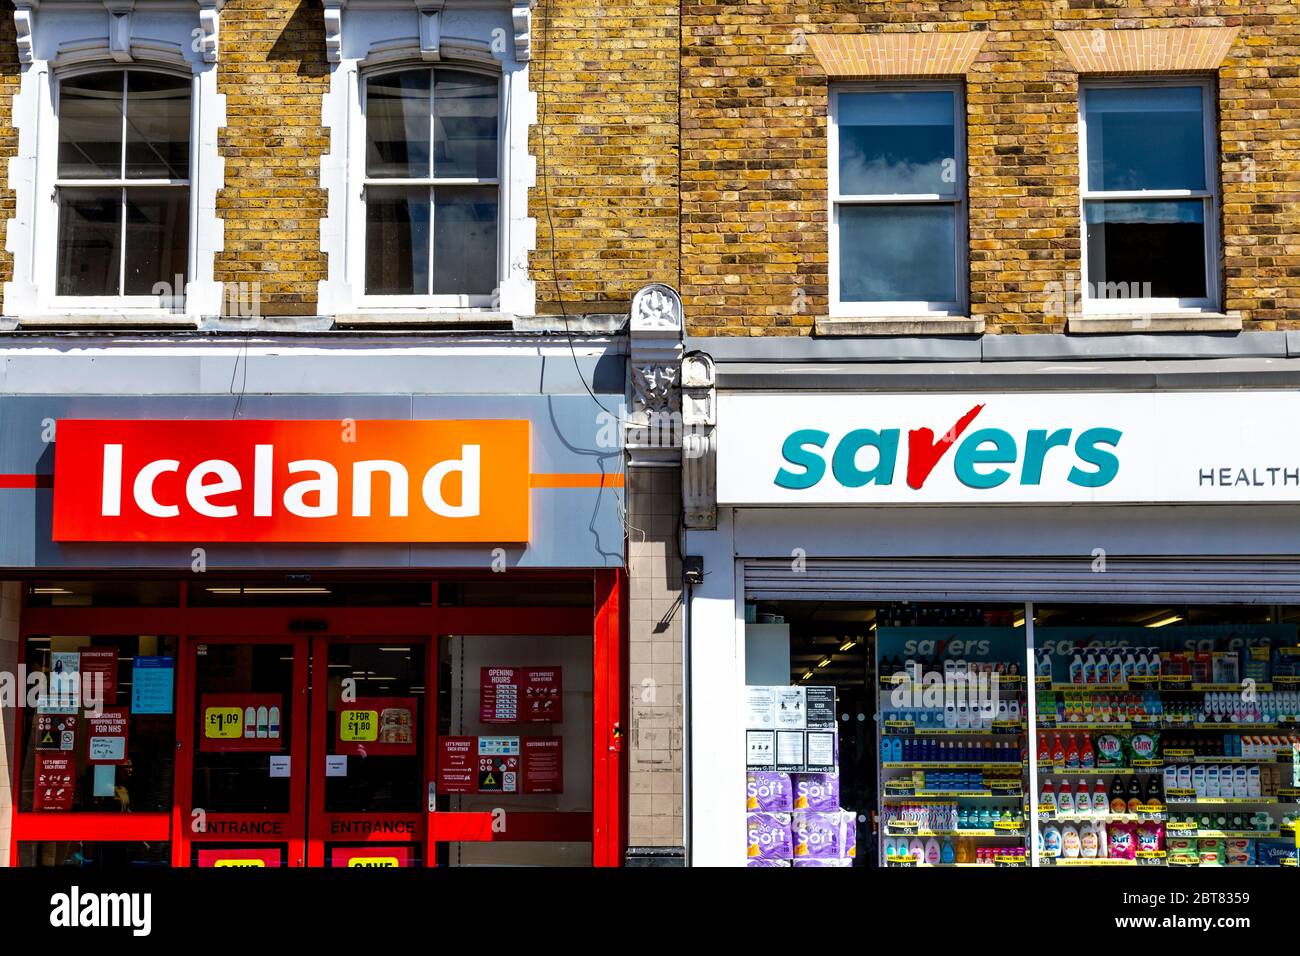 Cartelli per il supermercato budget Islanda e sconto salute e bellezza catena Savers, Londra, Regno Unito Foto Stock